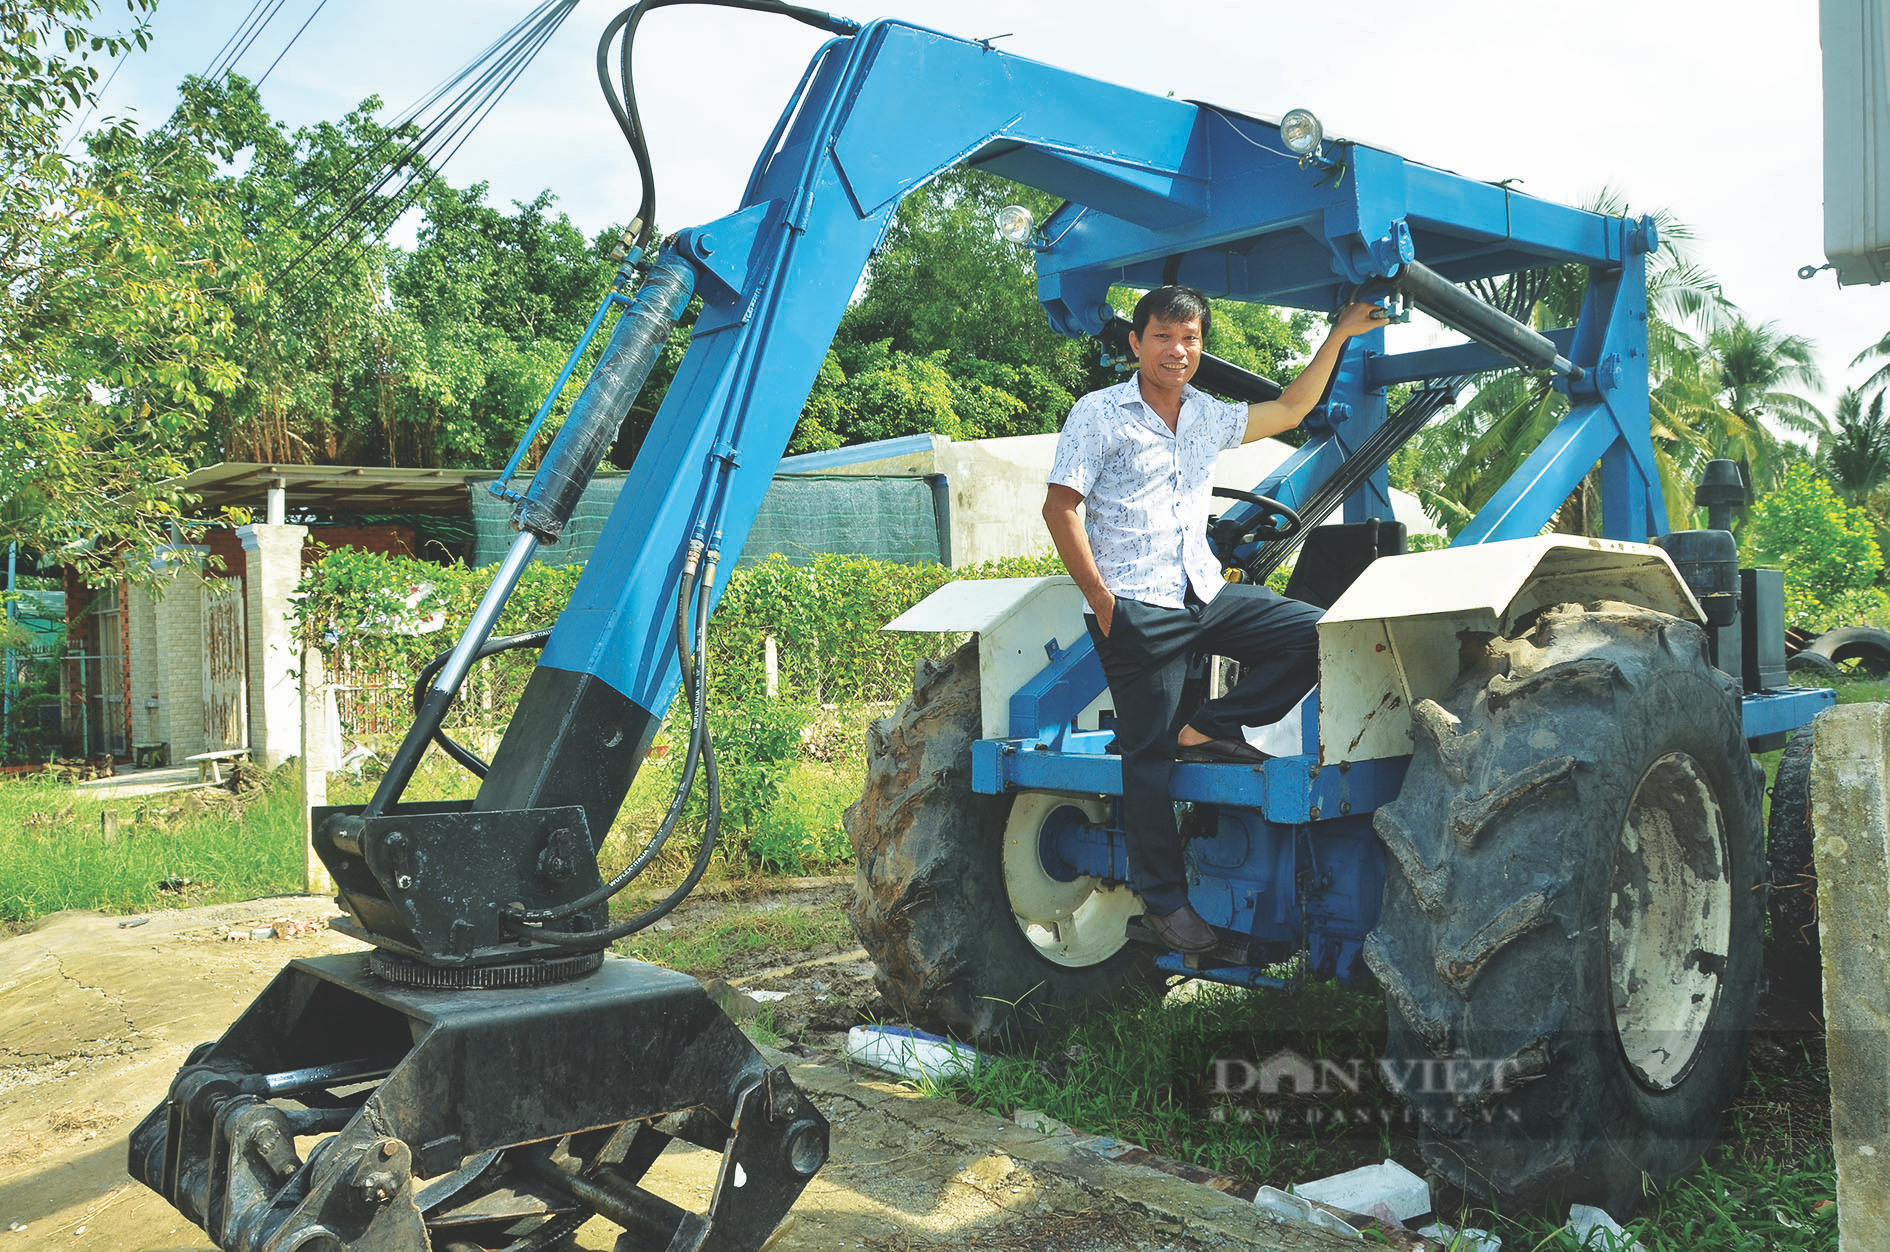 Anh nông dân Tây Ninh sáng chế máy gắp mía vừa nhanh, vừa khoẻ, cả làng trầm trồ khen siêu - Ảnh 1.